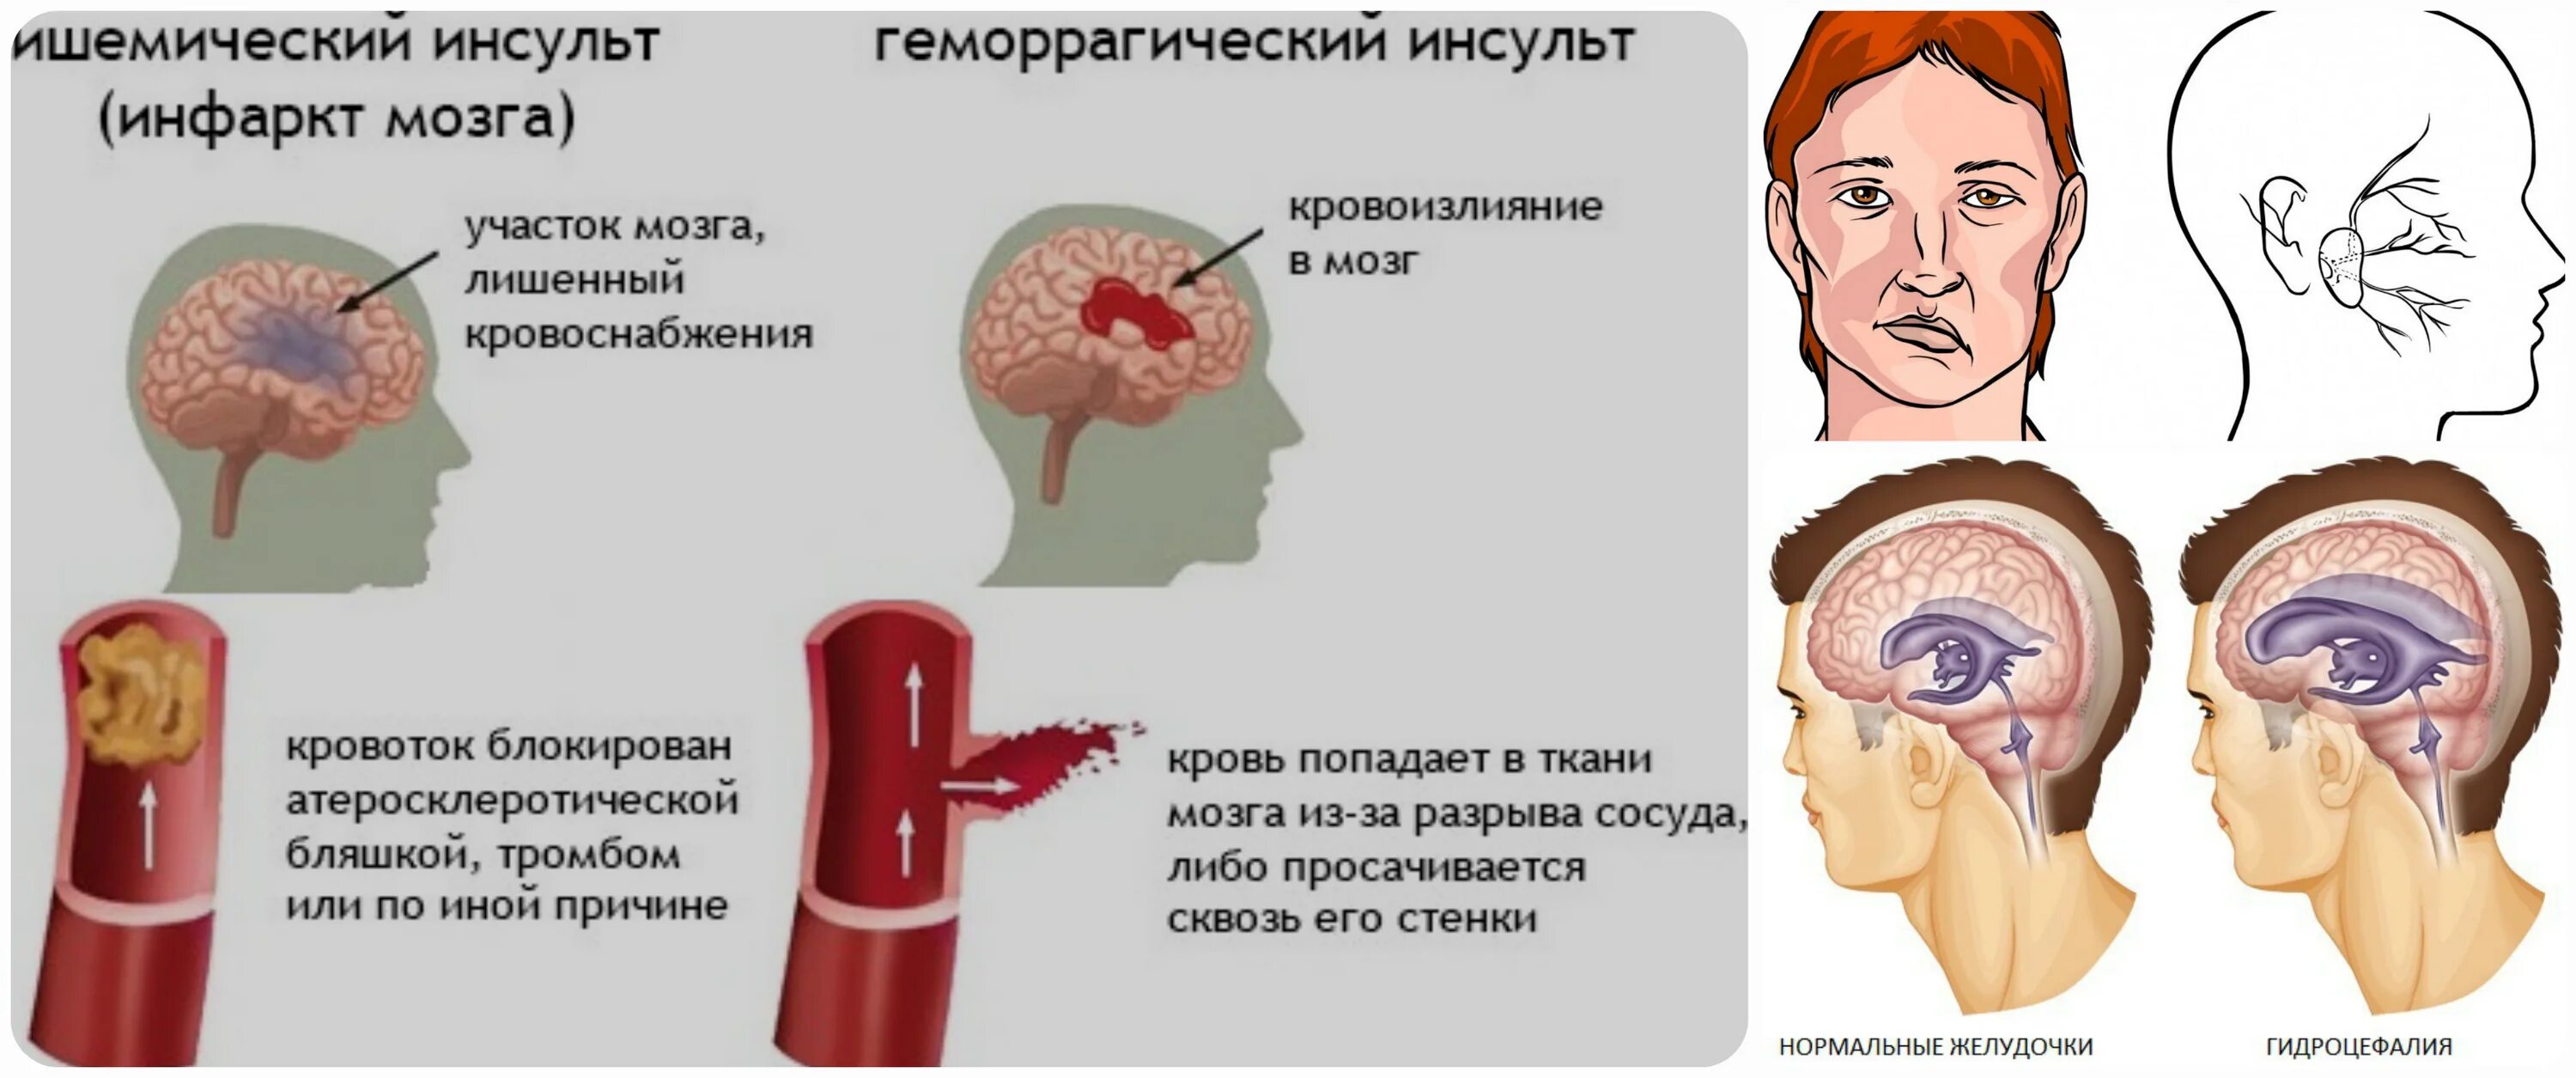 Признаки головного инсульта. Геморрагический инсульт. Геморрагический инсульт мозг. Геморрагический инсульт кровоизлияние в мозг. Мозг человека при инсульте.